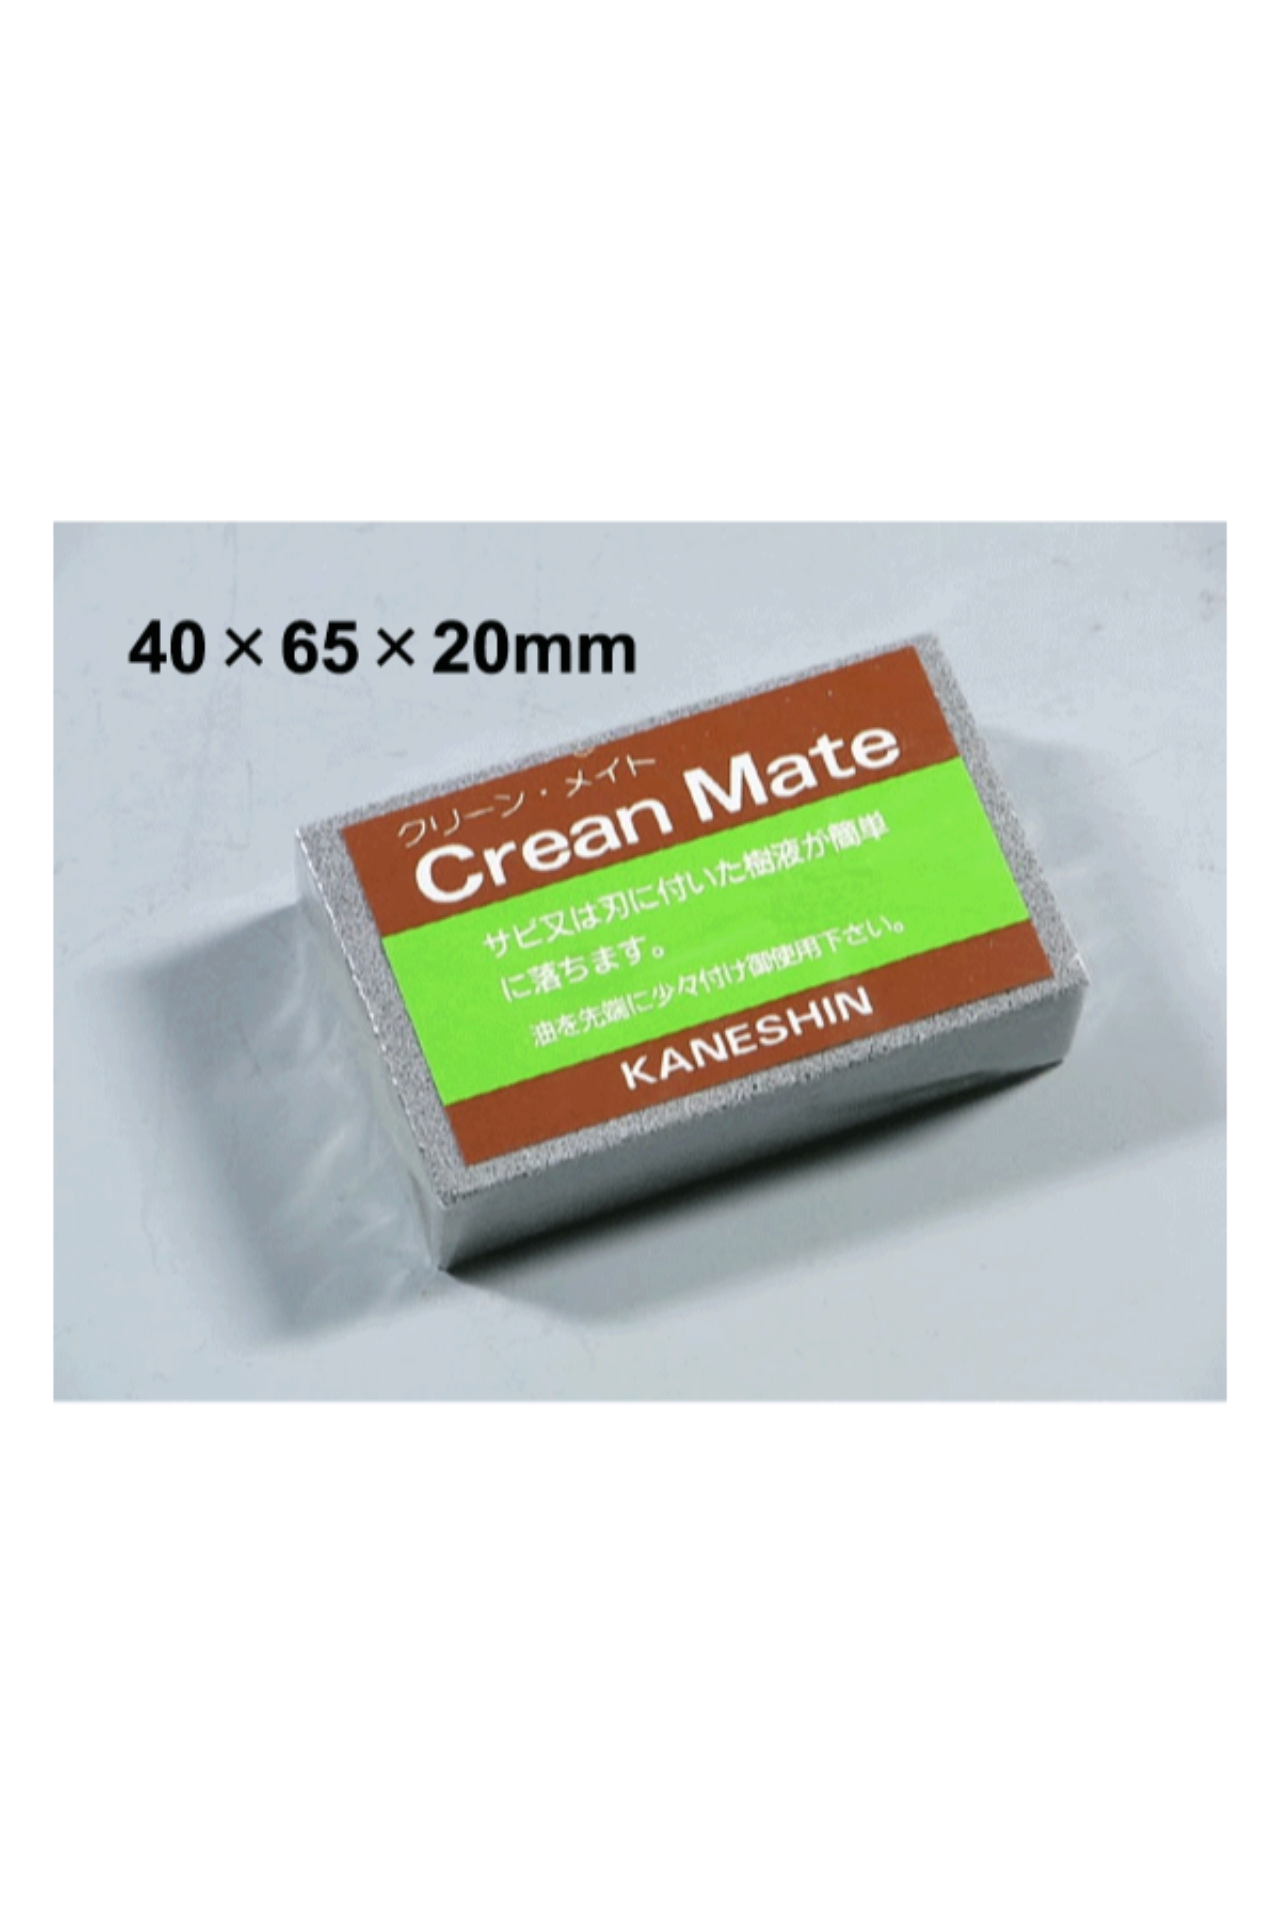 Picture of Gomma pulizia utensili Crean Mate 180 g giapponese